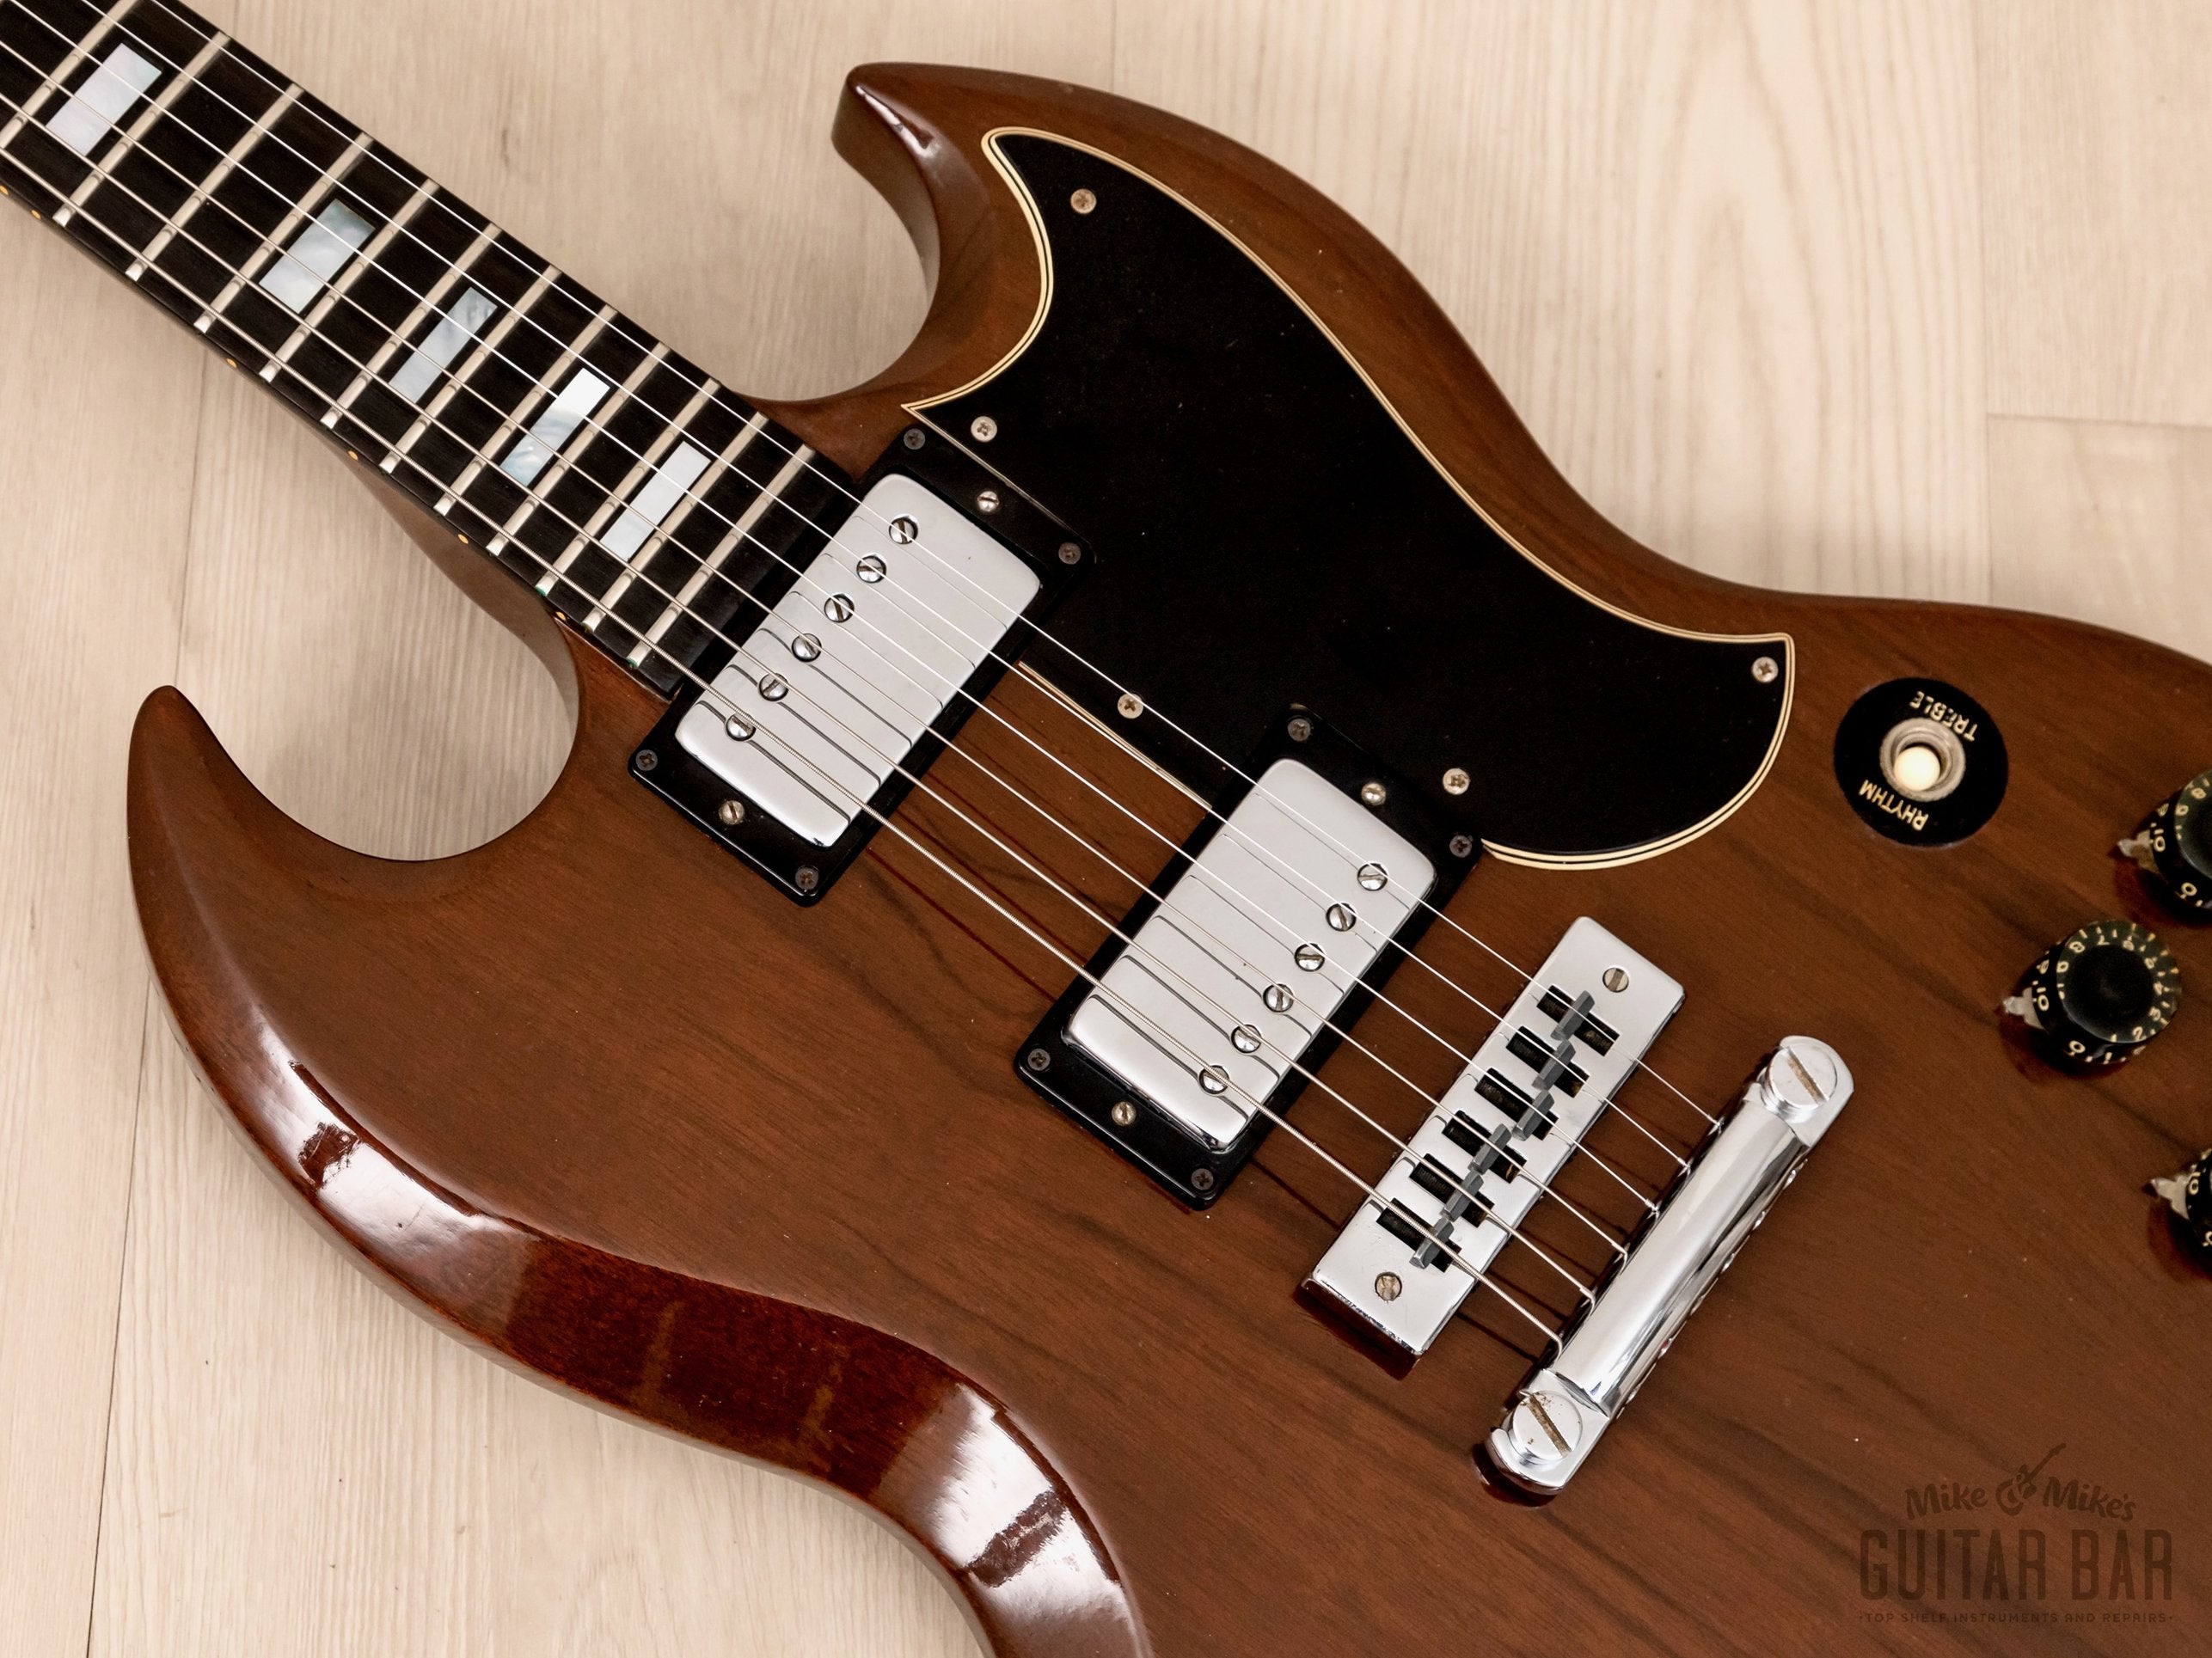 1973 Gibson SG Standard Vintage Guitar Walnut w/ Ebony Board, Tarback Pickups, Case